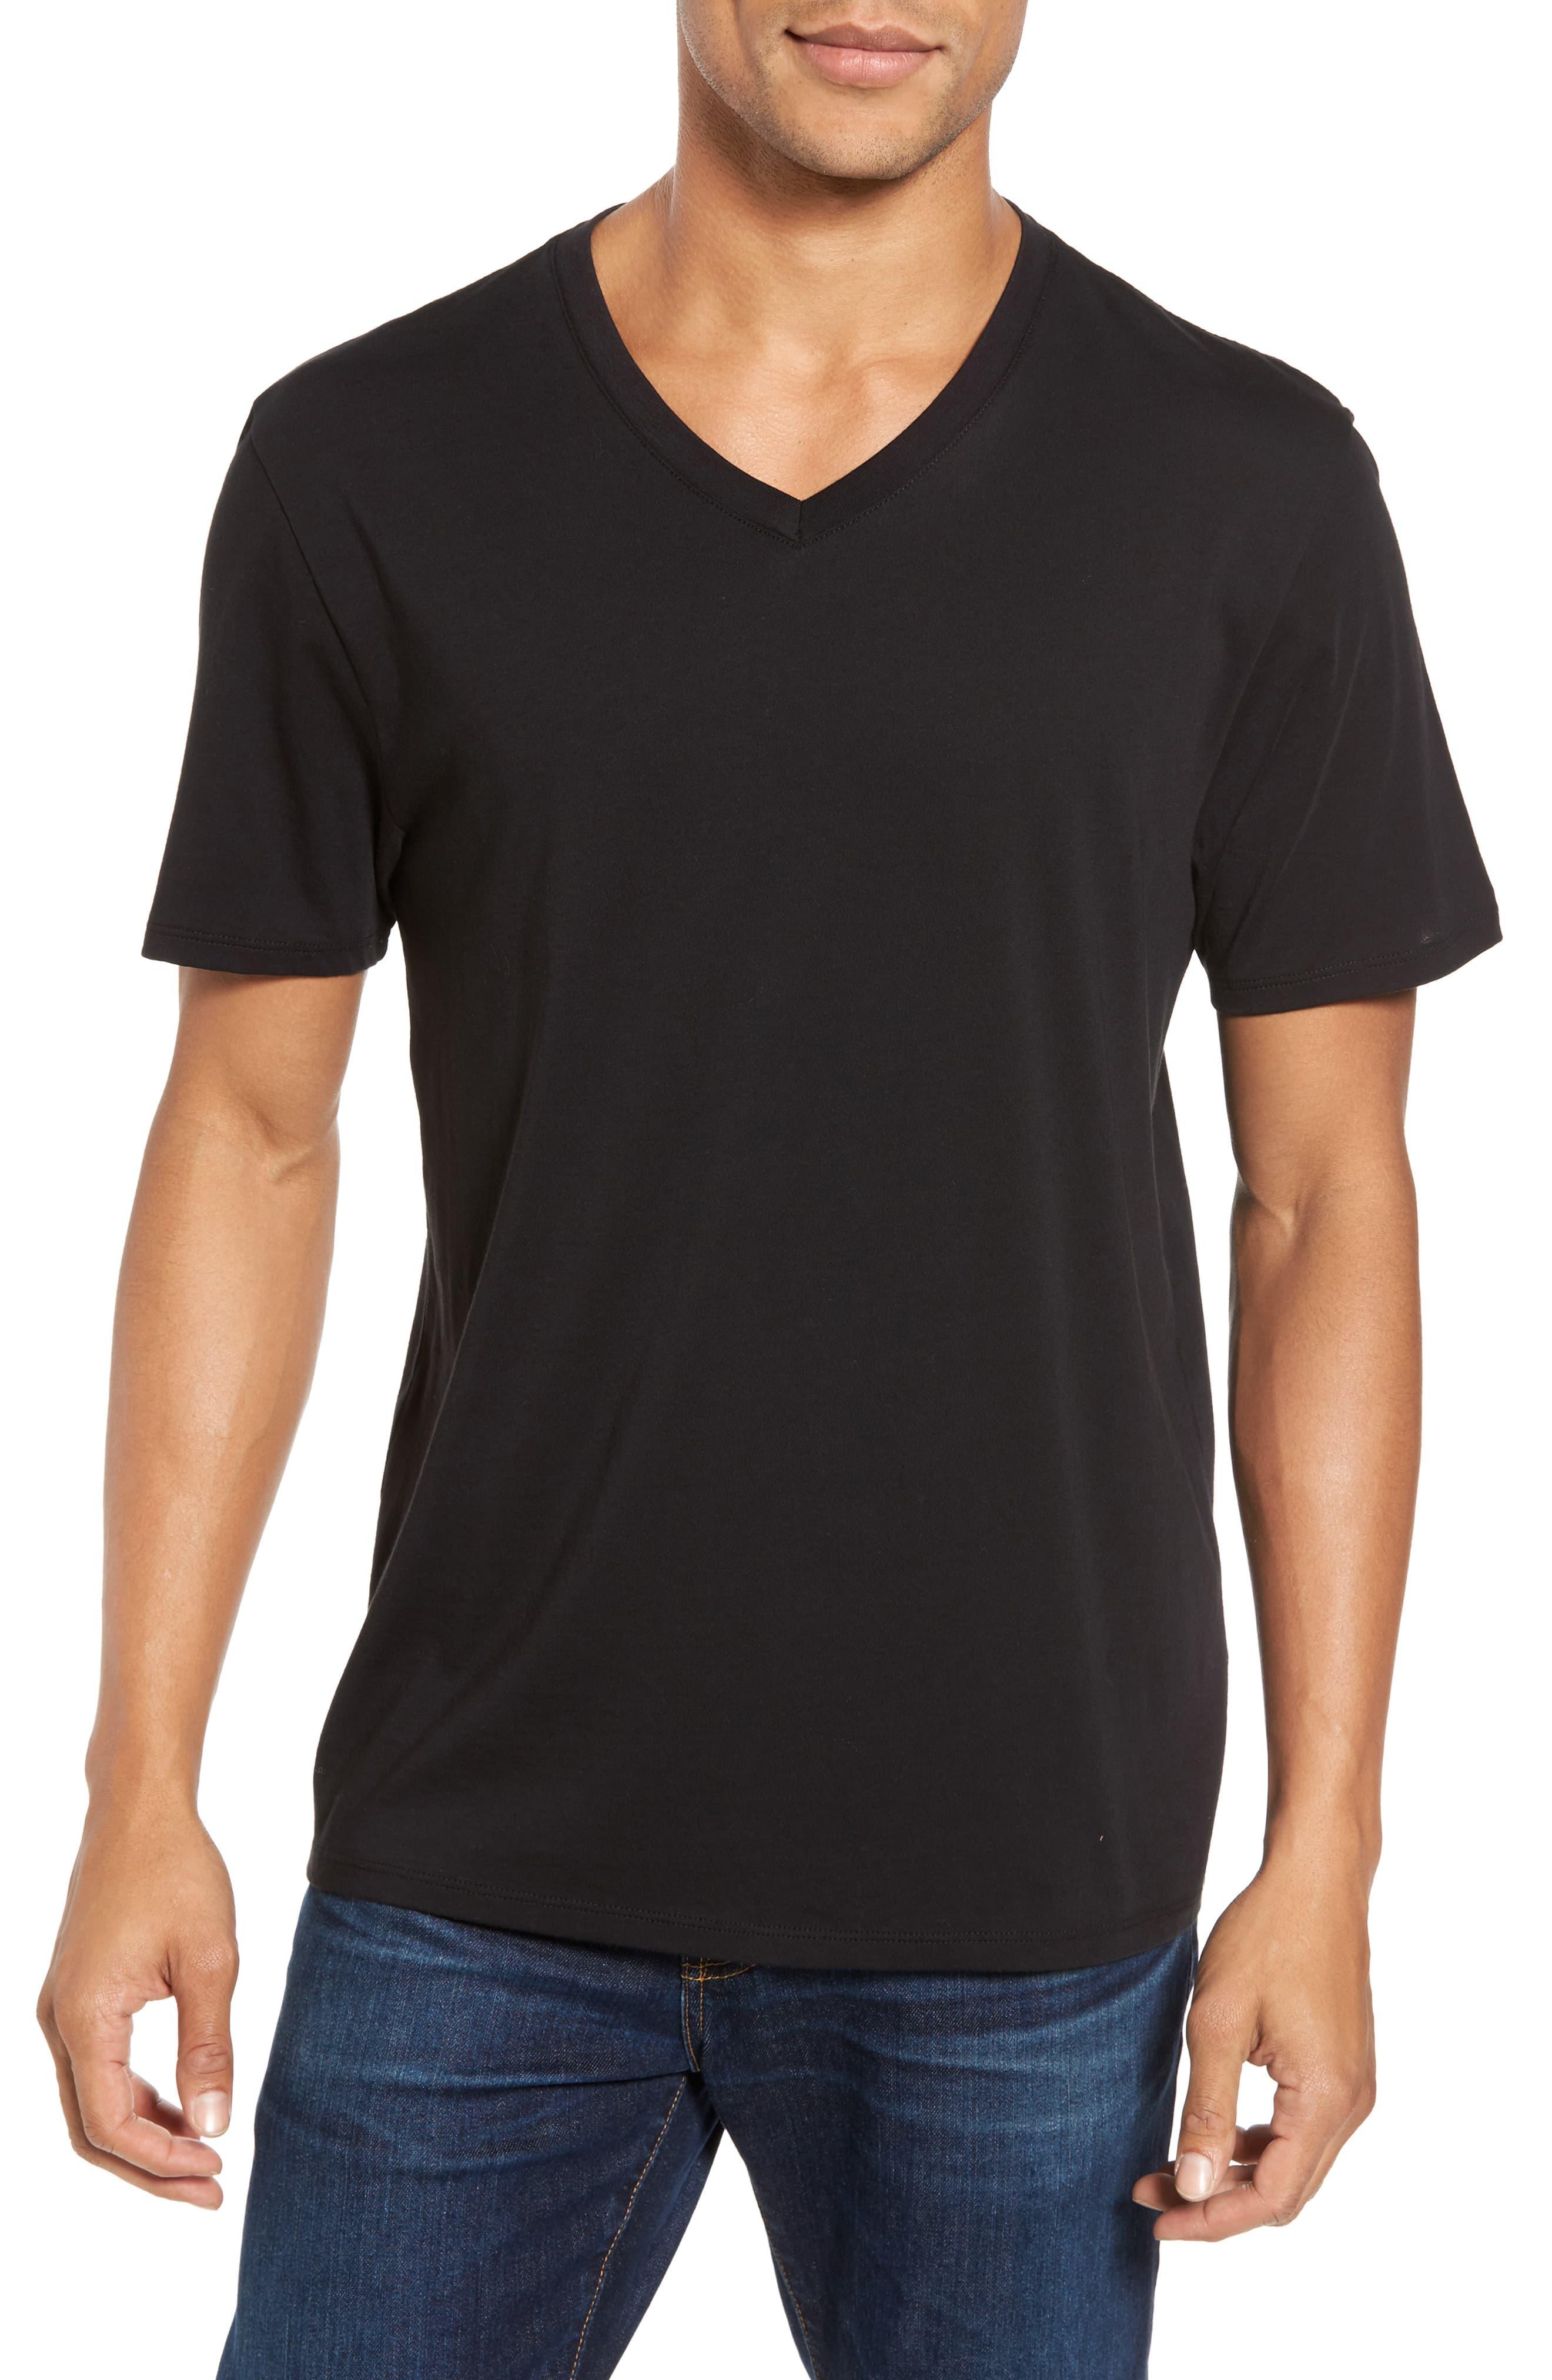 Vince Pima Cotton Slim Fit V-neck T-shirt in Black for Men - Save 15% ...